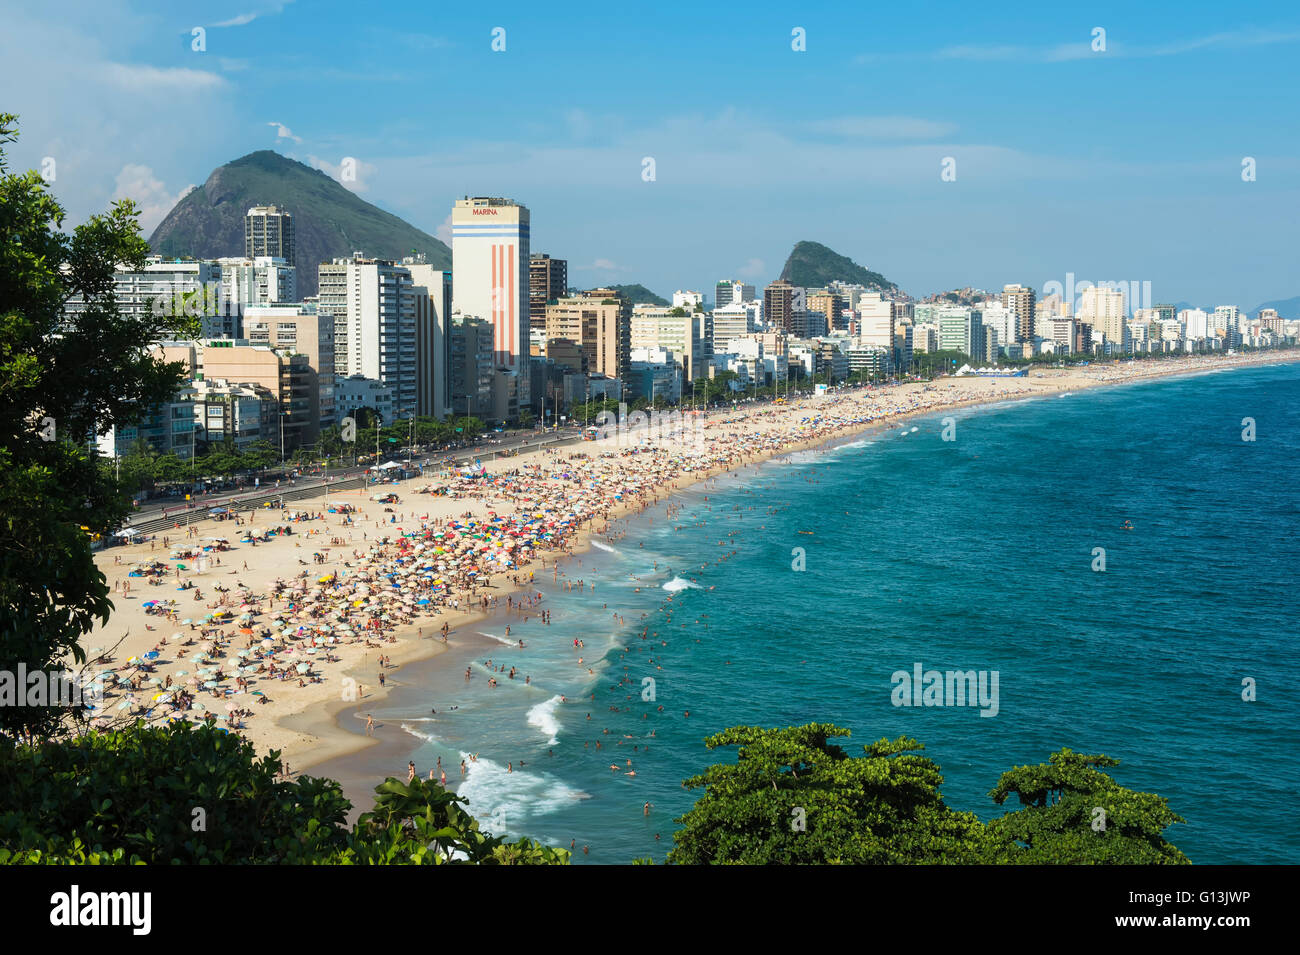 Leblon beach, Rio de Janeiro, Brazil Stock Photo